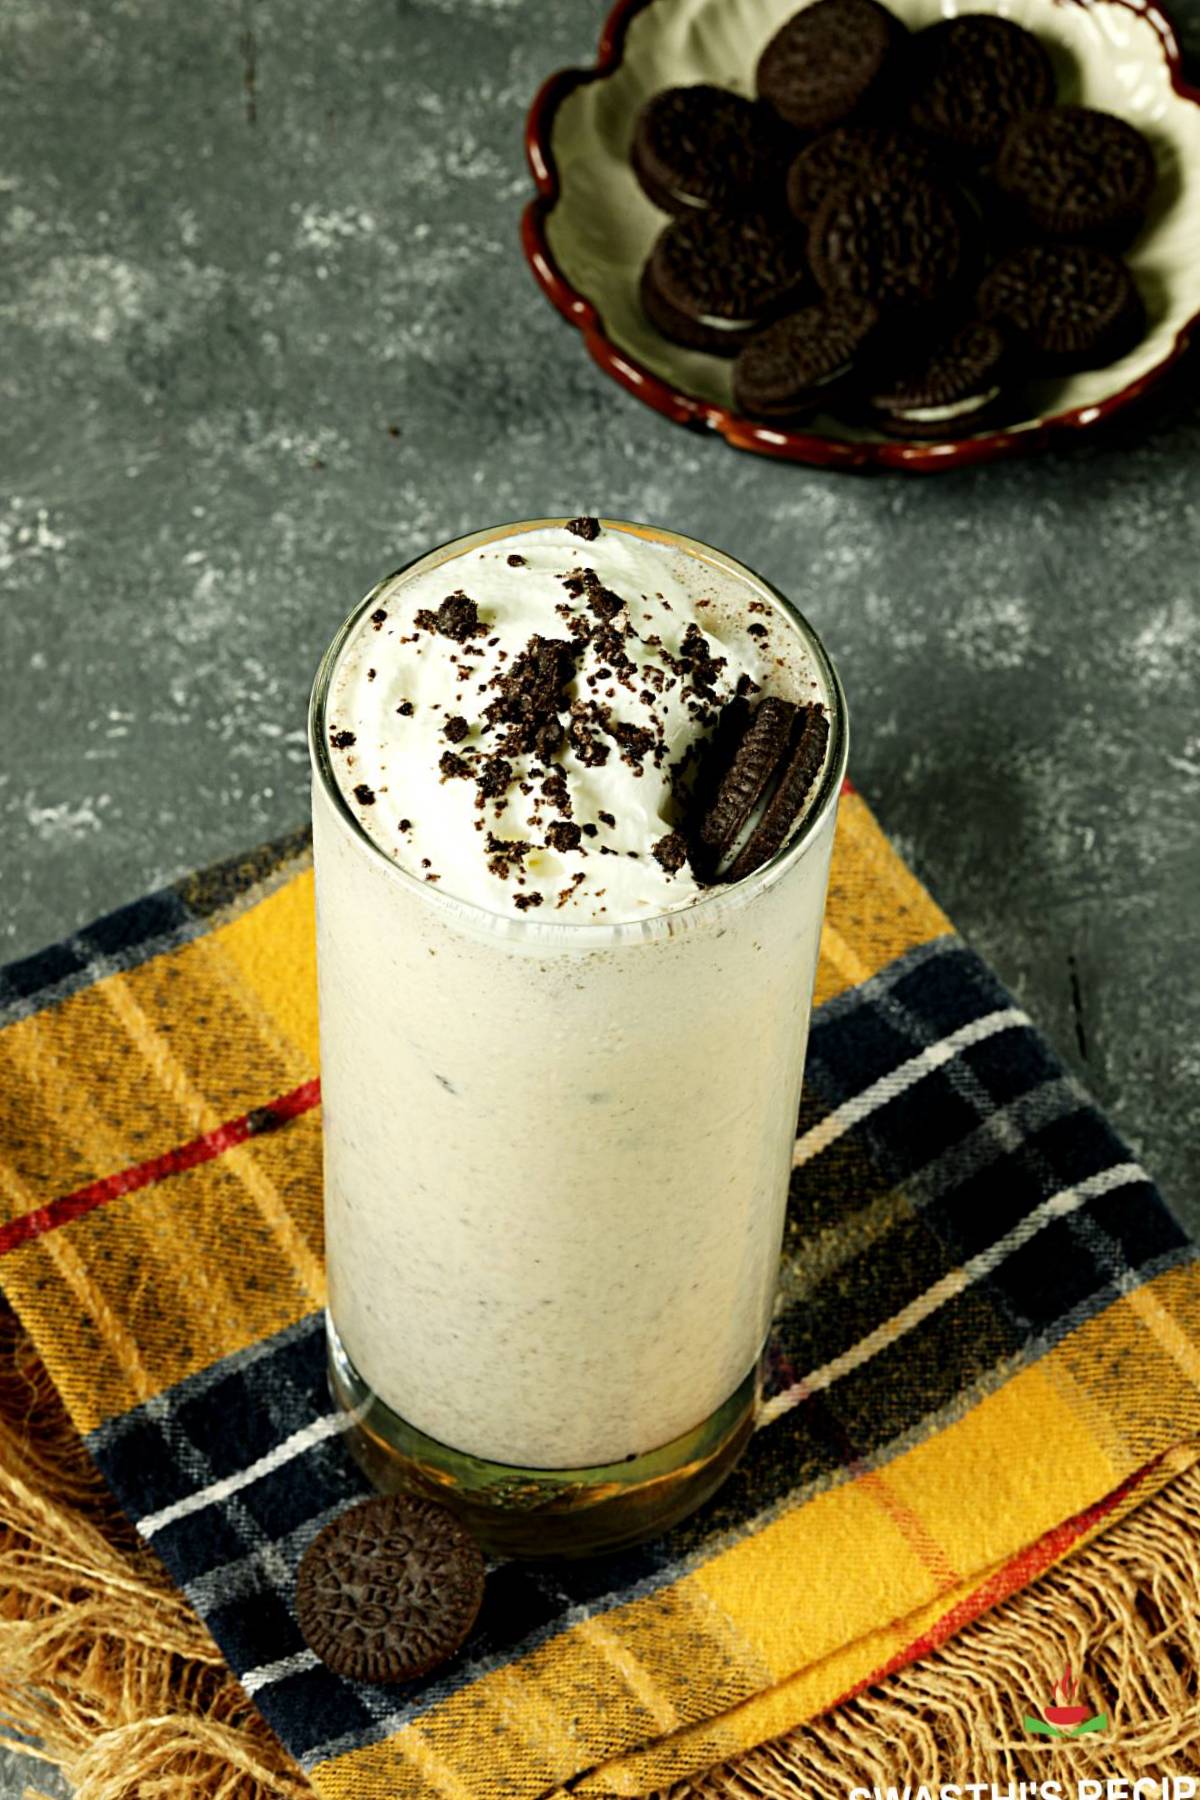 oreo milkshake made with vanilla ice cream